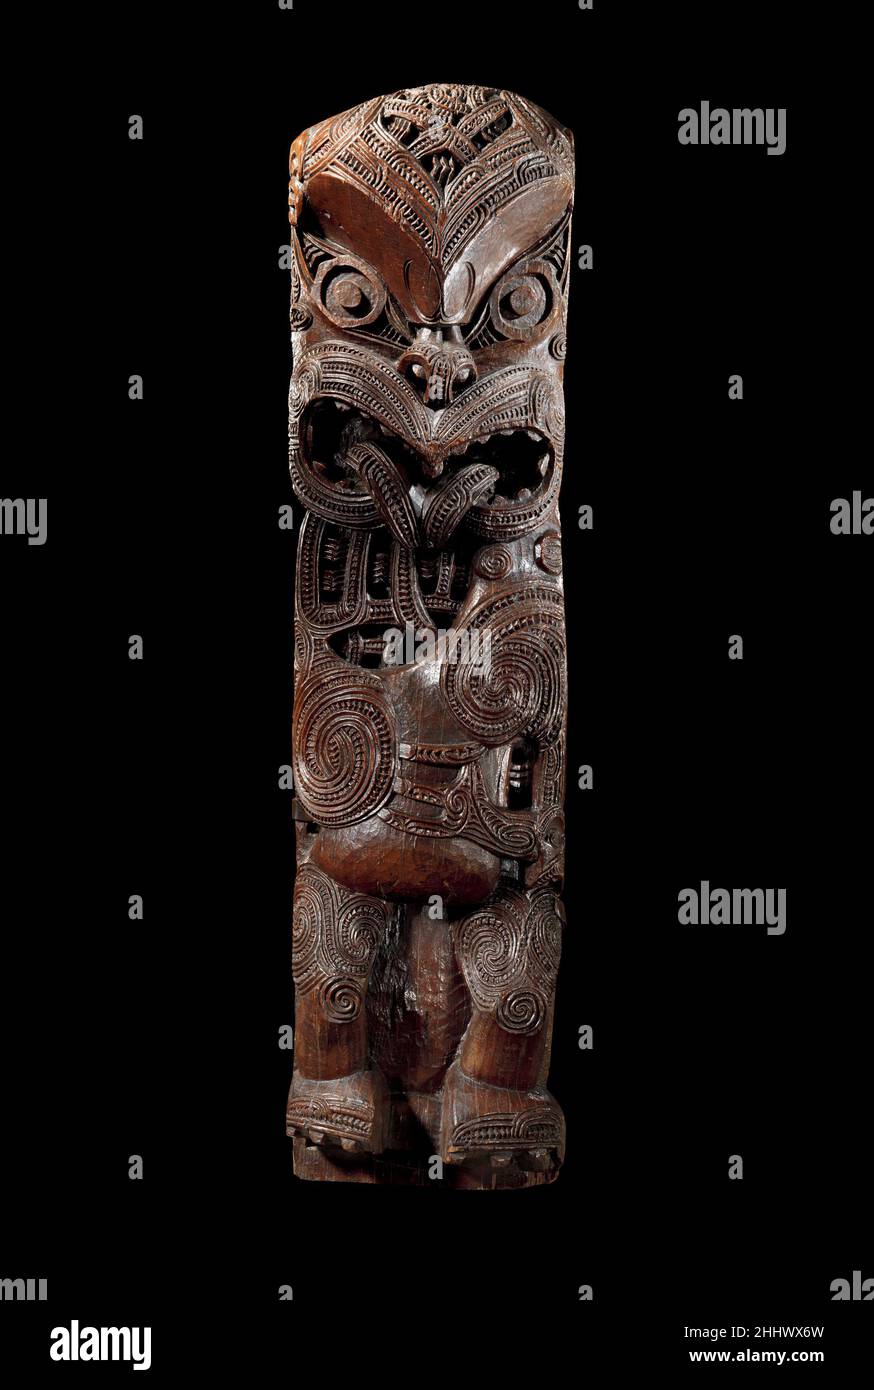 Figurine de poste de maison (Amo) ca.1800 Maoris, les grandes salles de réunion communales de te Arawa ont servi, et continuent de servir, comme points focaux importants pour la communauté parmi le peuple maori de Nouvelle-Zélande (Aotearoa).Richement ornée de sculptures représentant des ancêtres et des figures de la mythologie maorie, la salle de réunion fonctionne comme chambre de conseil, maison d'hôtes, centre communautaire, et lieu de rassemblement pour la discussion et le débat sur des questions importantes.Les salles de réunion sont particulièrement importantes car les lieux où l'histoire, les coutumes et la généalogie du groupe local sont préservés et transmis au gène suivant Banque D'Images